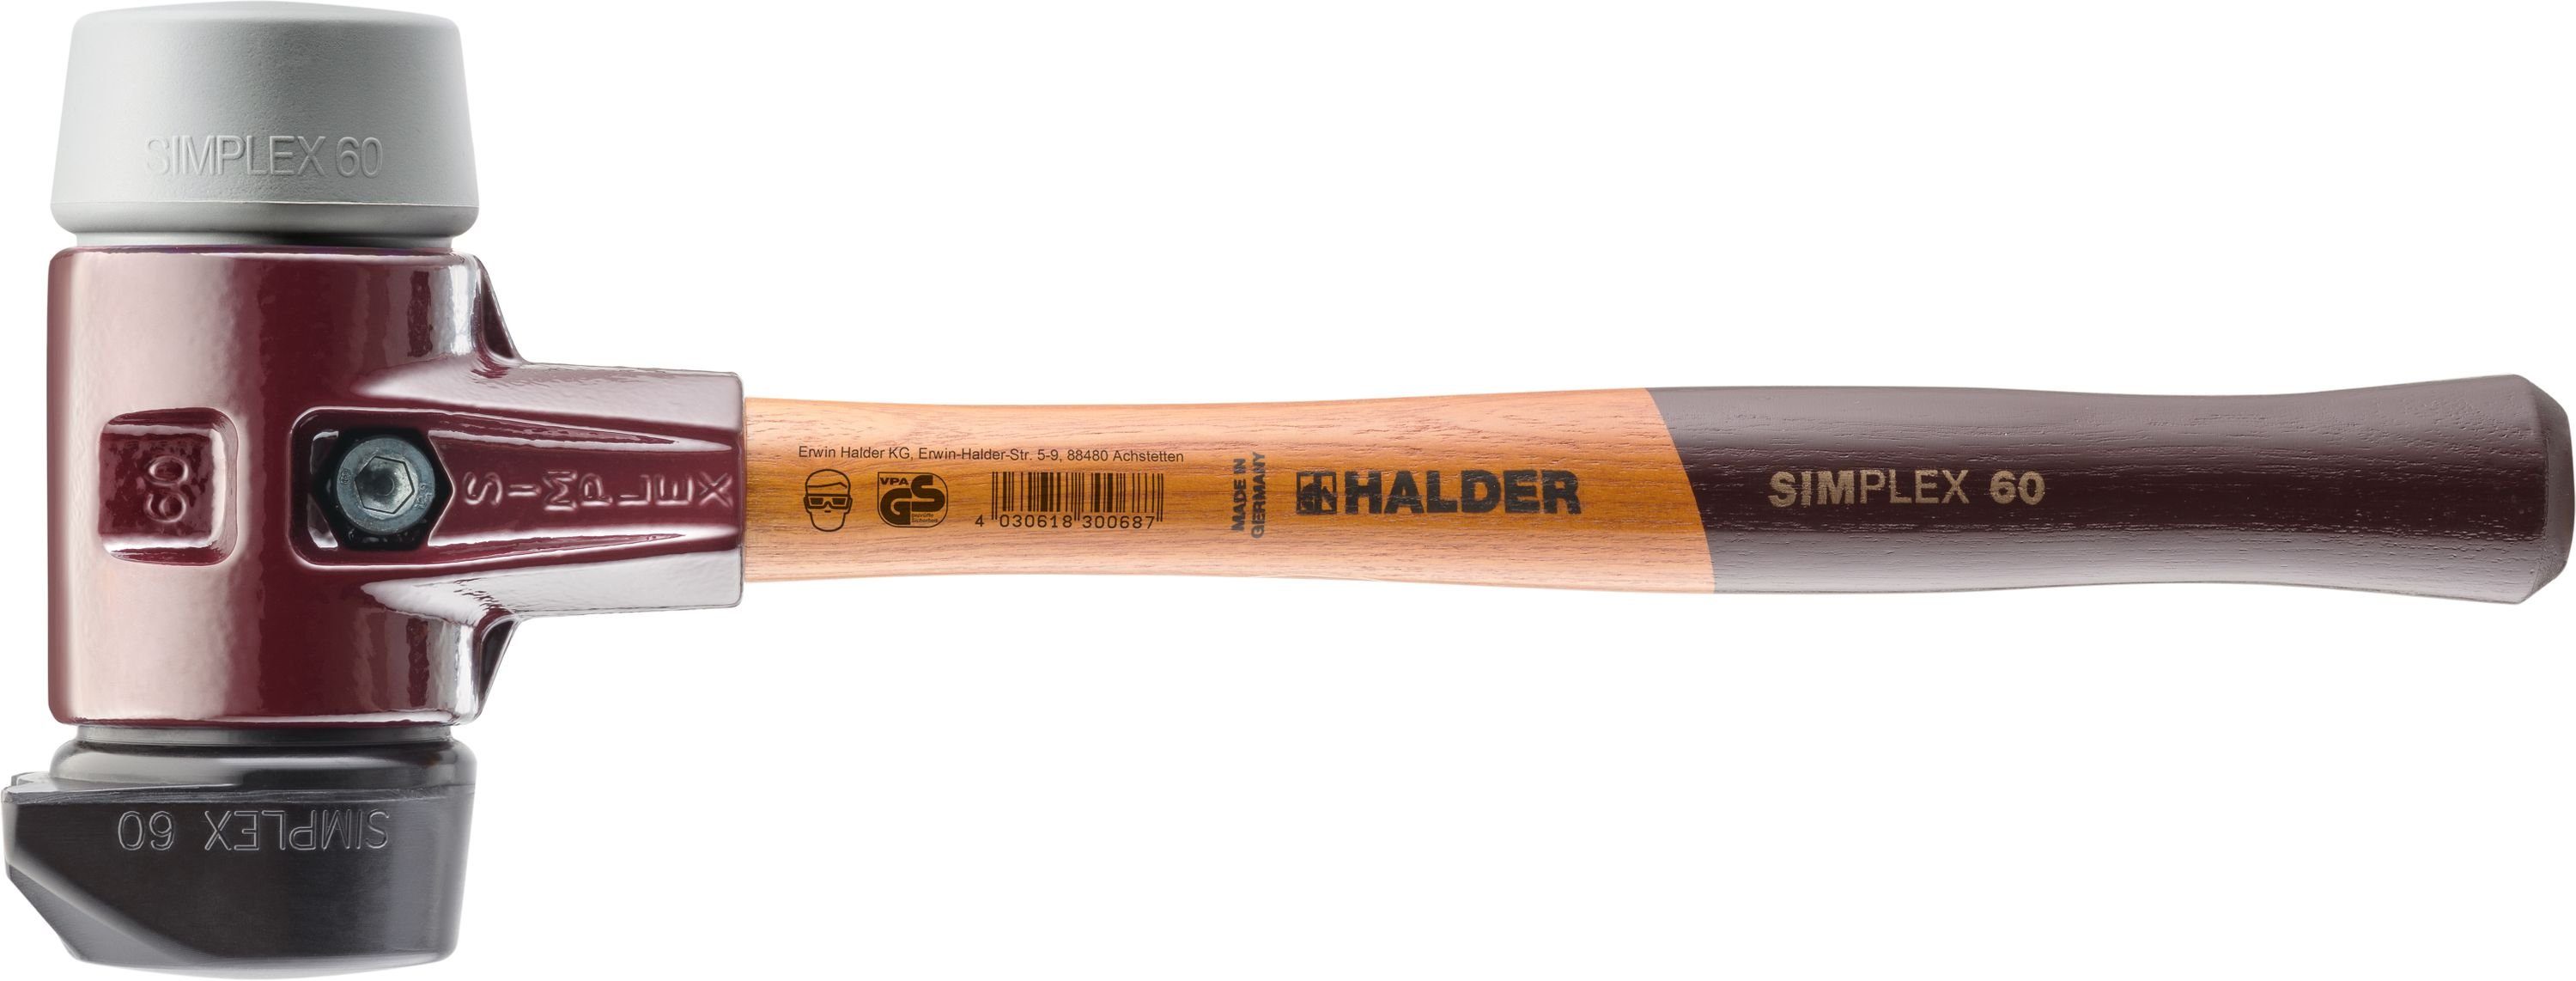 Halder KG Hammer Halder mittelhart - 60mm Simplex-Schonhammer 2 TPE Gummi Standfuß und 3023.260 mit Schlageinsätzen & mittelhart